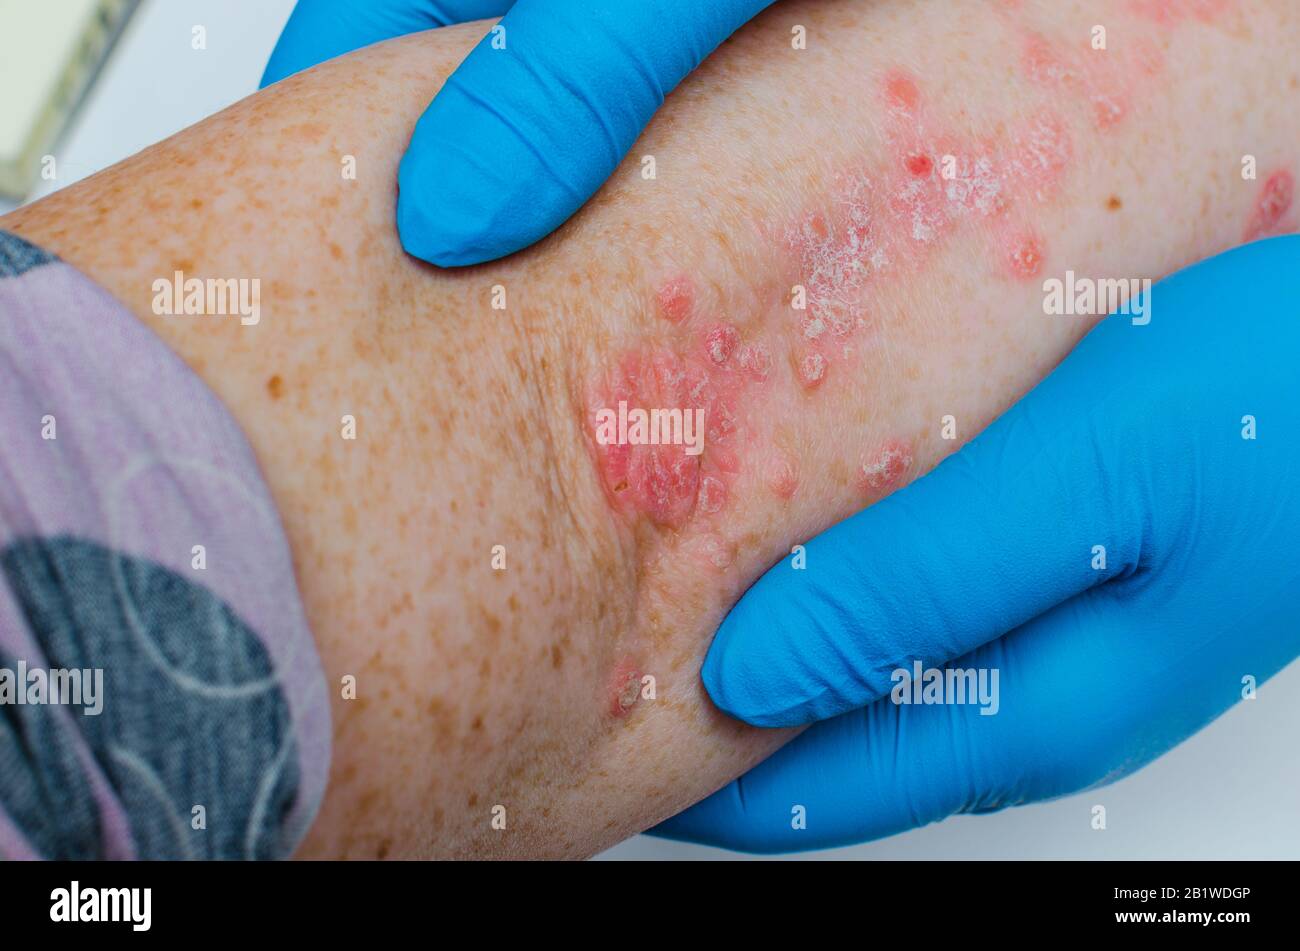 Malattie della pelle immagini e fotografie stock ad alta risoluzione - Alamy